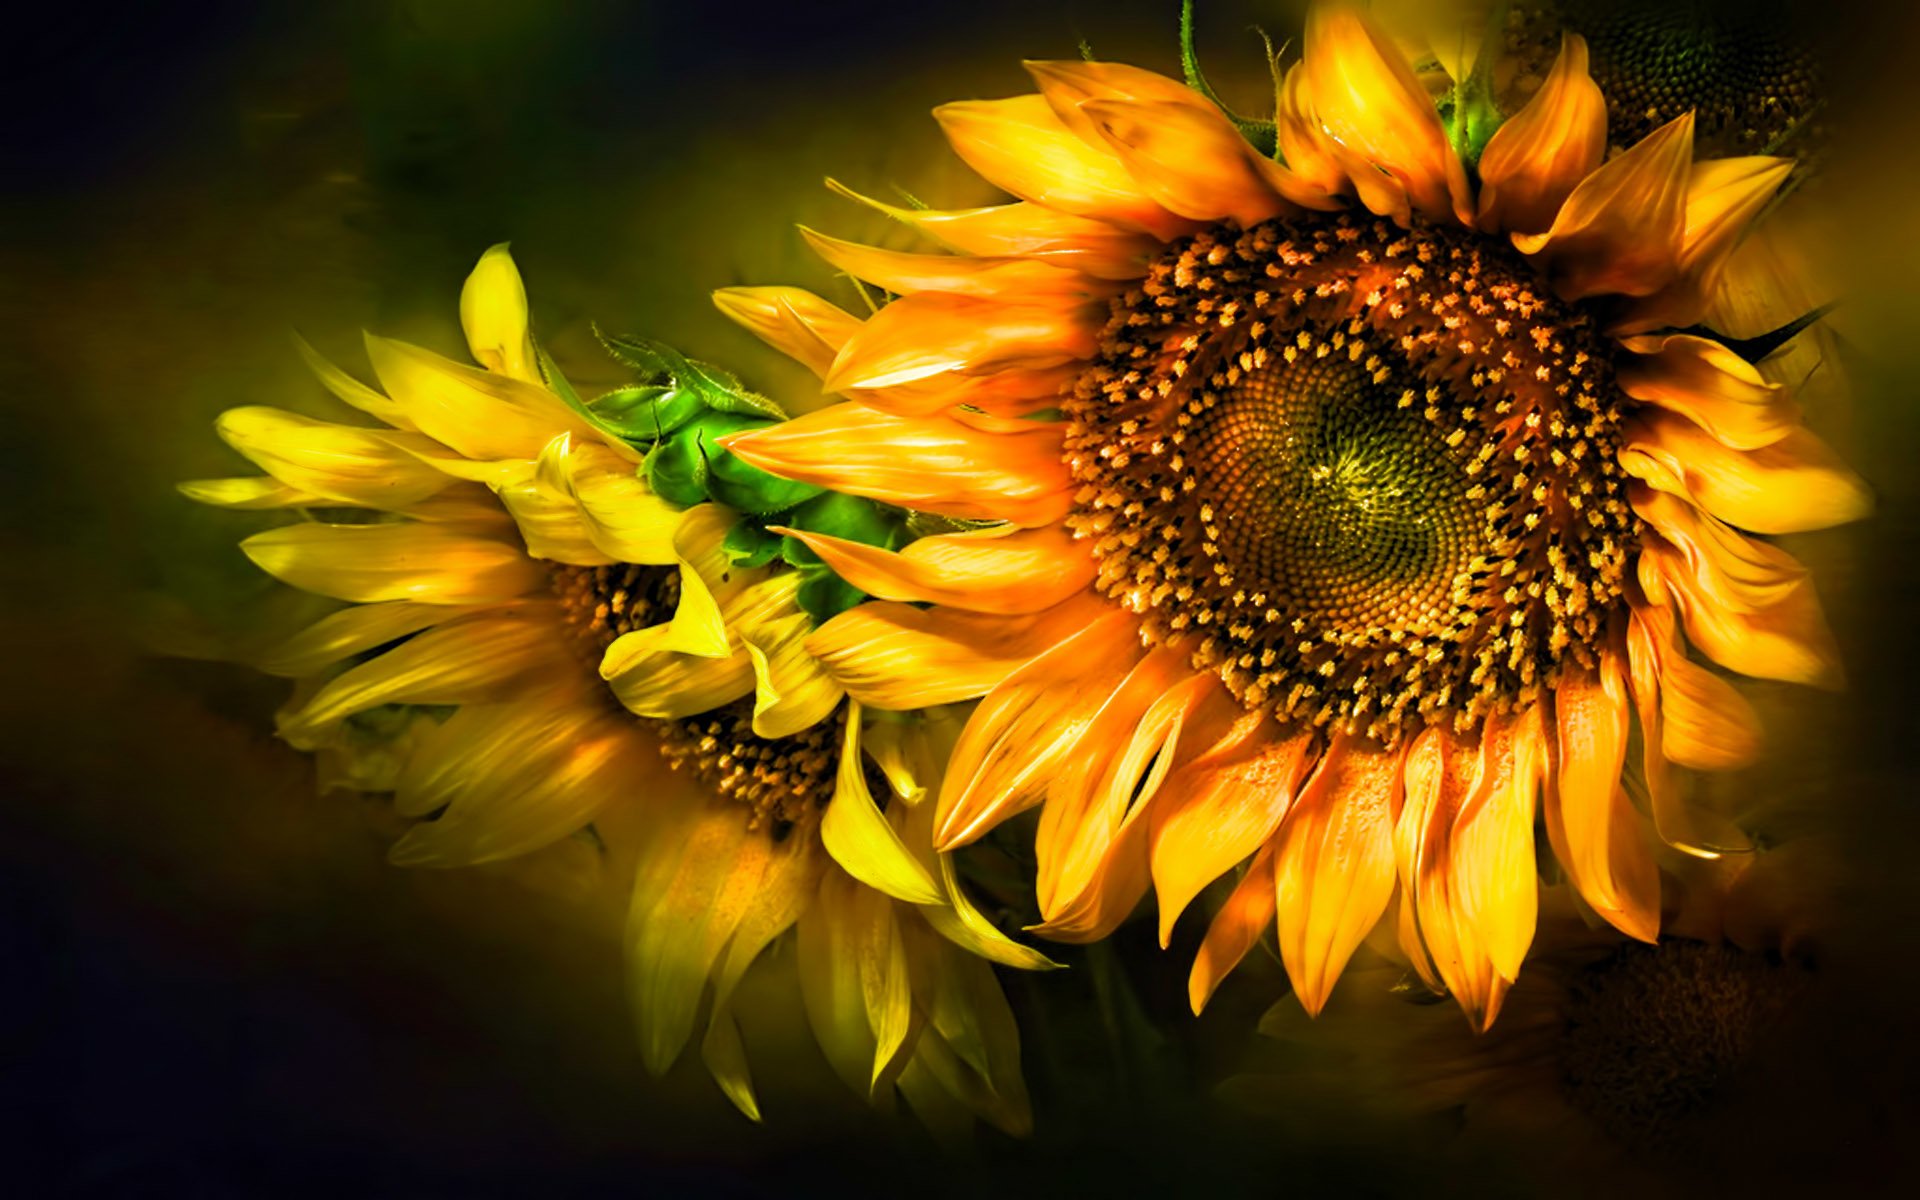 sunflower desktop wallpaper,sunflower,nature,flower,yellow,sunflower